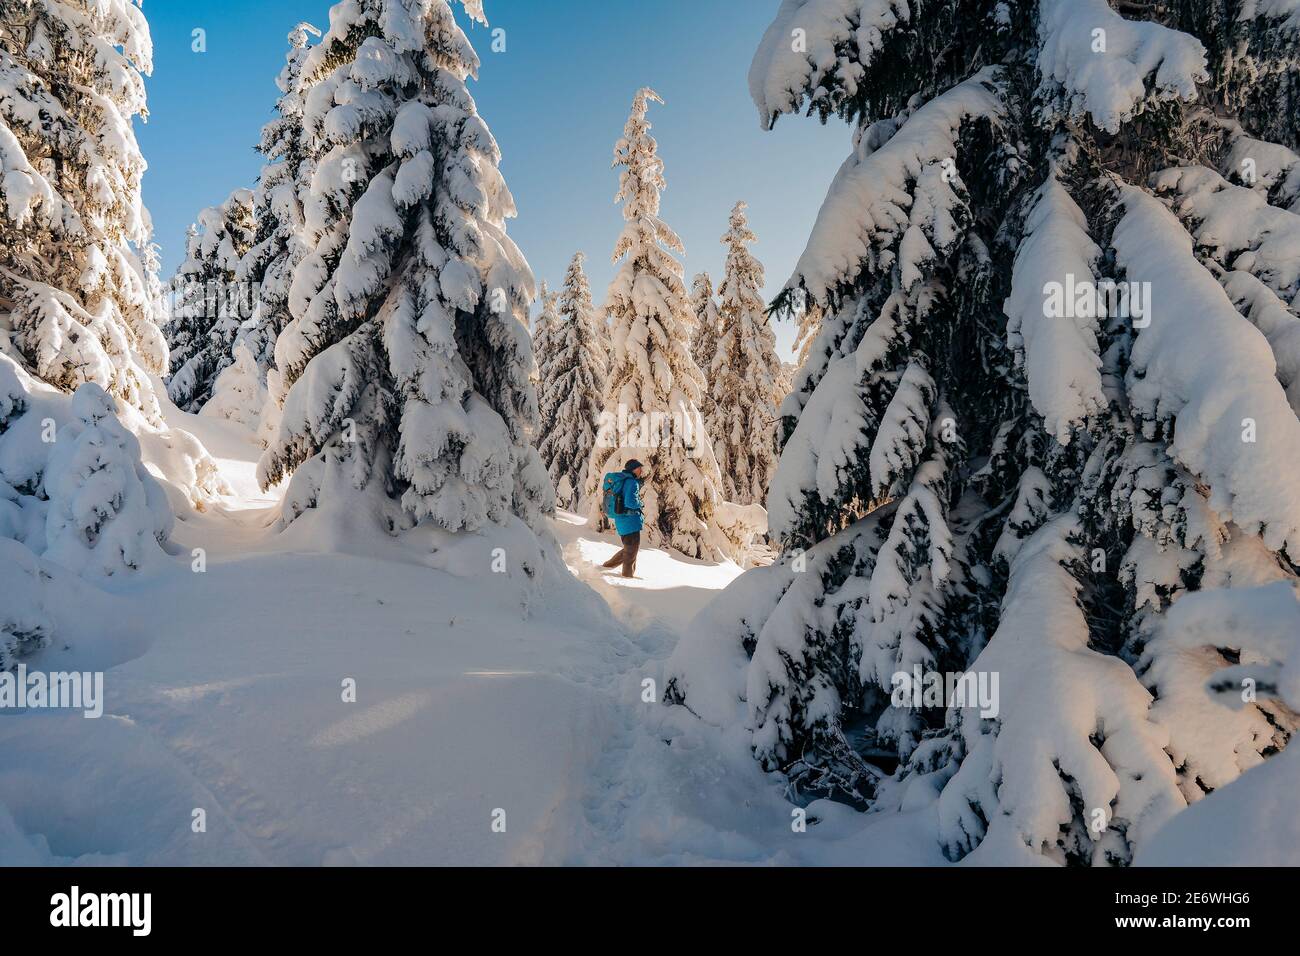 Jeune homme avec une veste jaune au milieu d'arbres congelés. Magnifique paysage hivernal merveilleux en Scandinavie. Épinettes couvertes de neige Banque D'Images